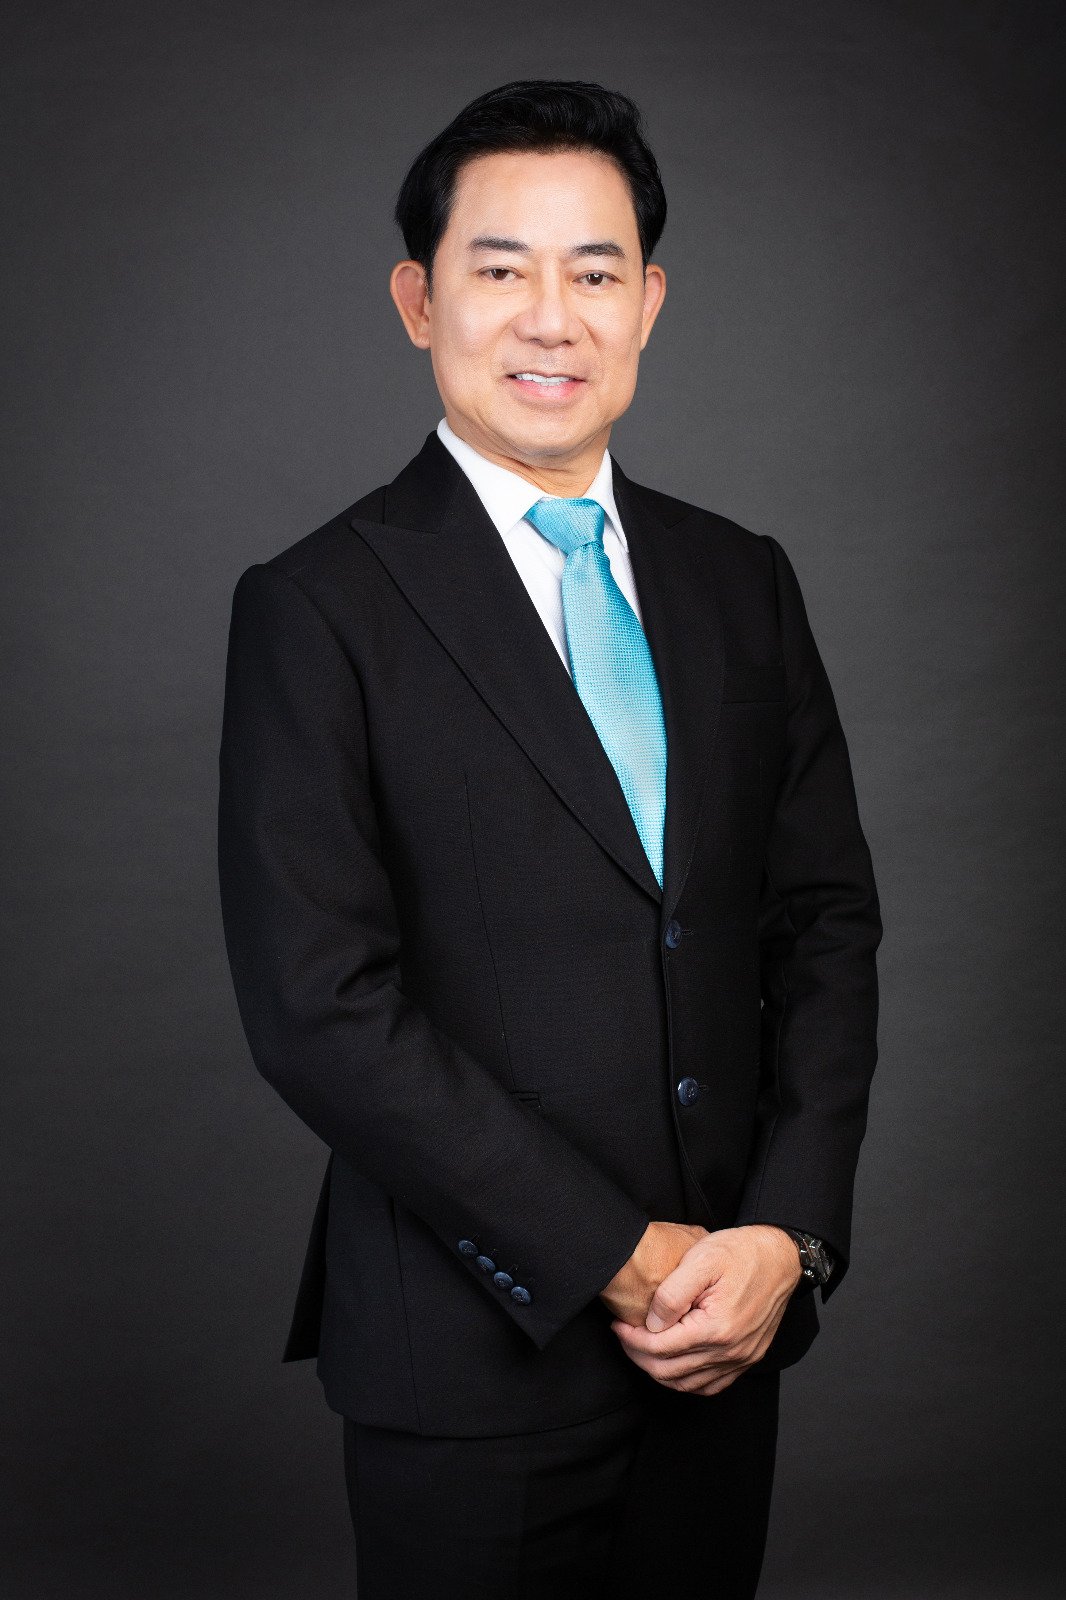 生育护理专家、阿儿法国际辅助生殖集团董事经理拿督李顺树。